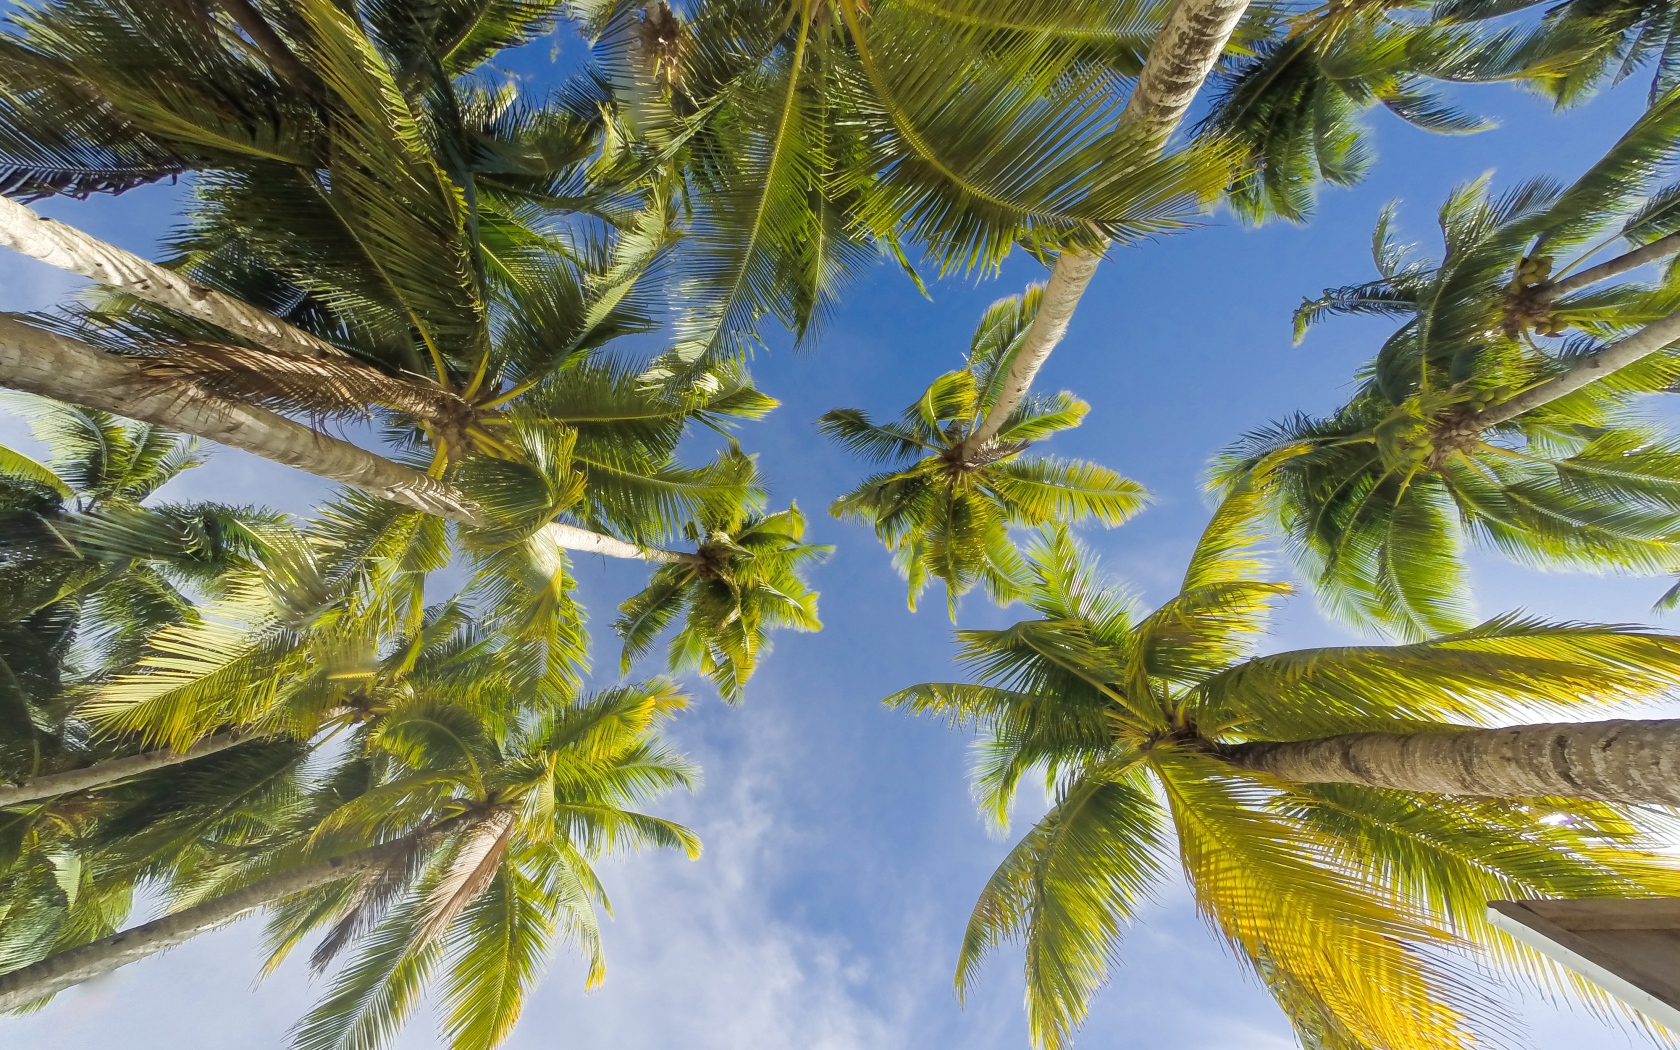 Вид снизу  на зеленые листья пальмы под голубым небом